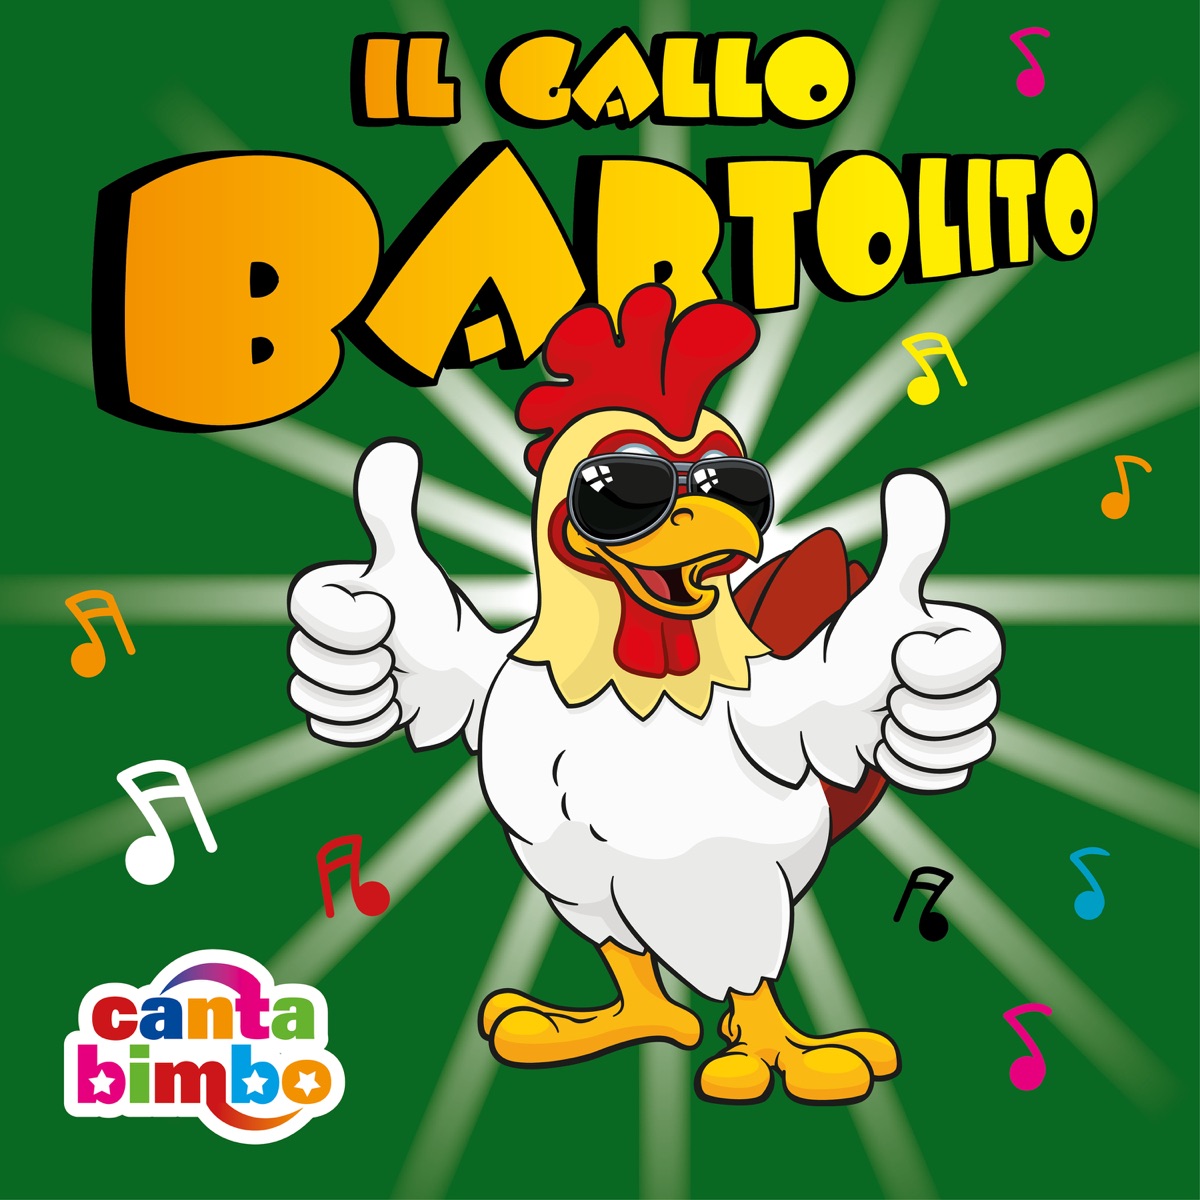 Bartolito Gallo